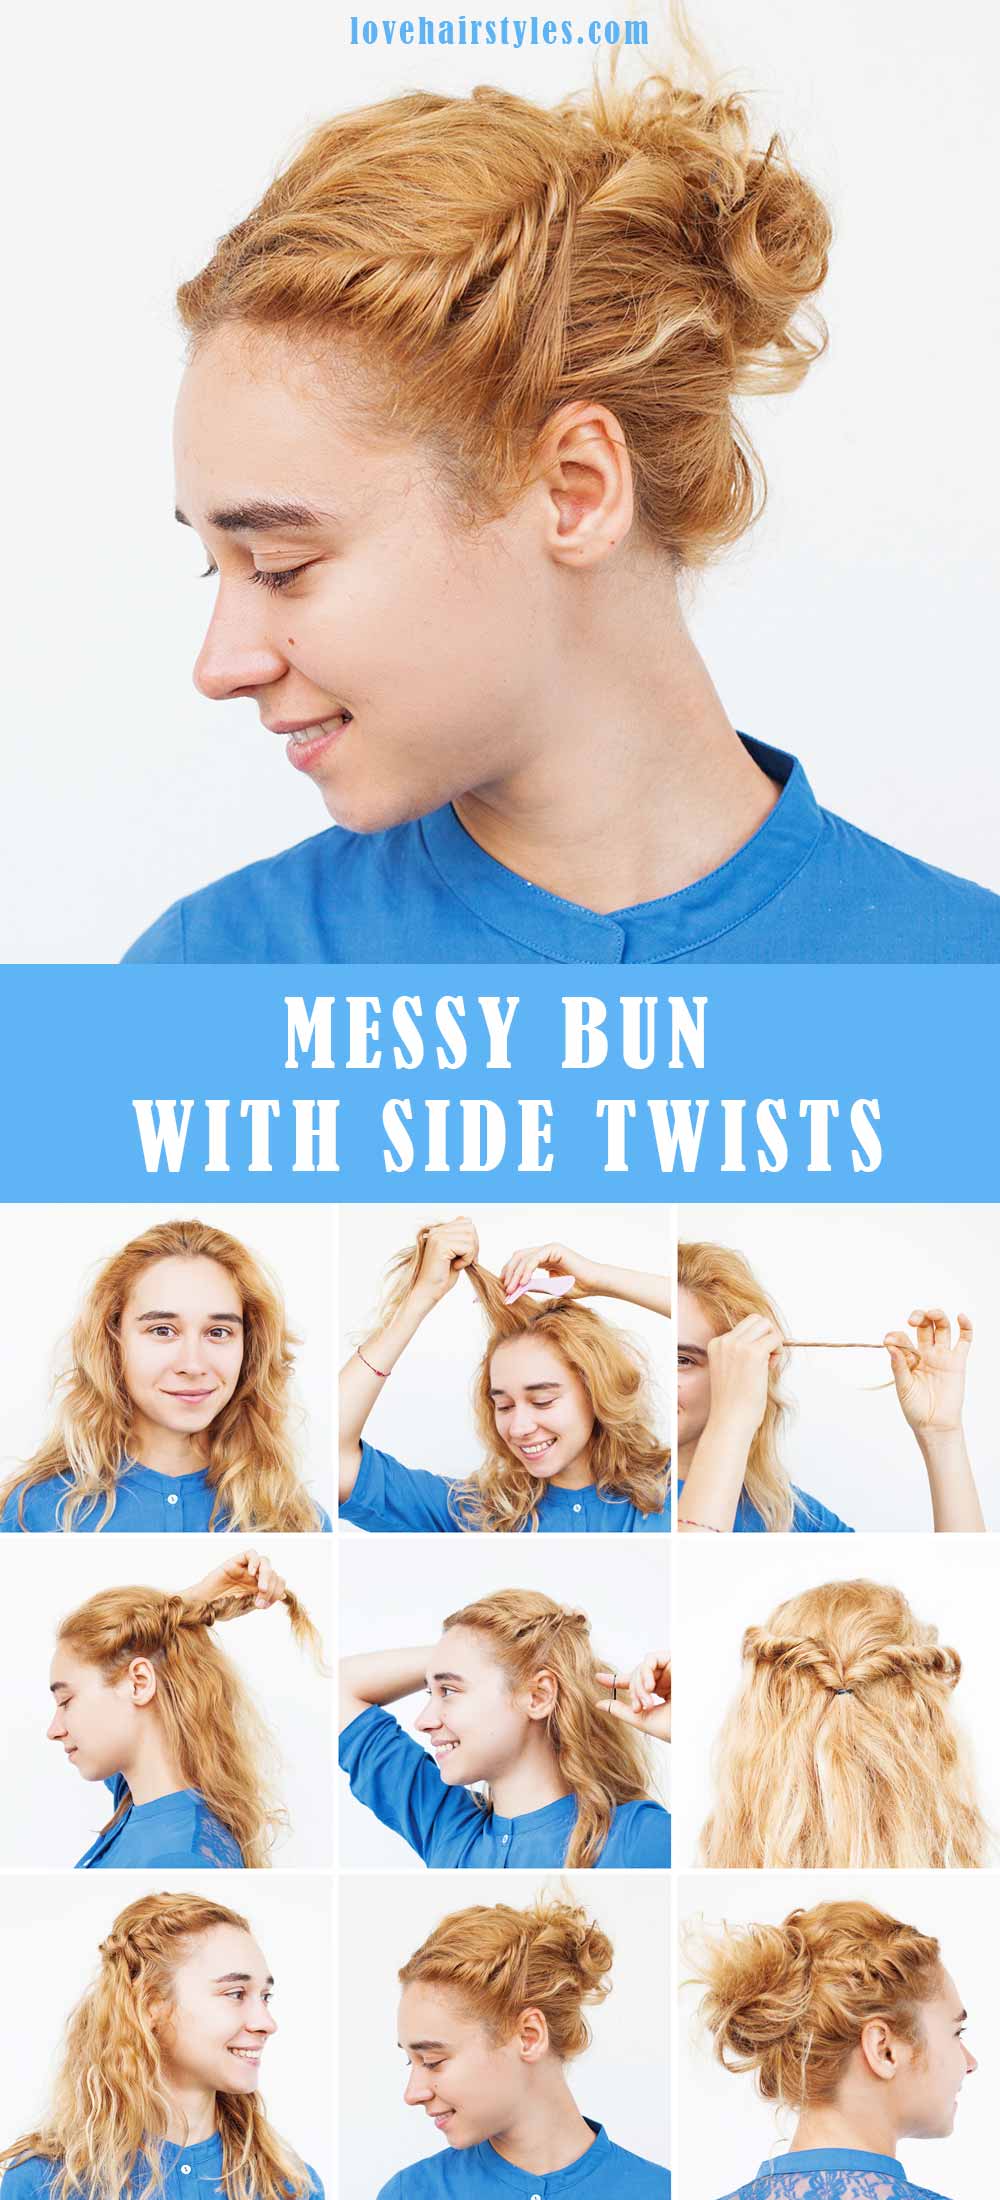 Messy Bun With Side Twists